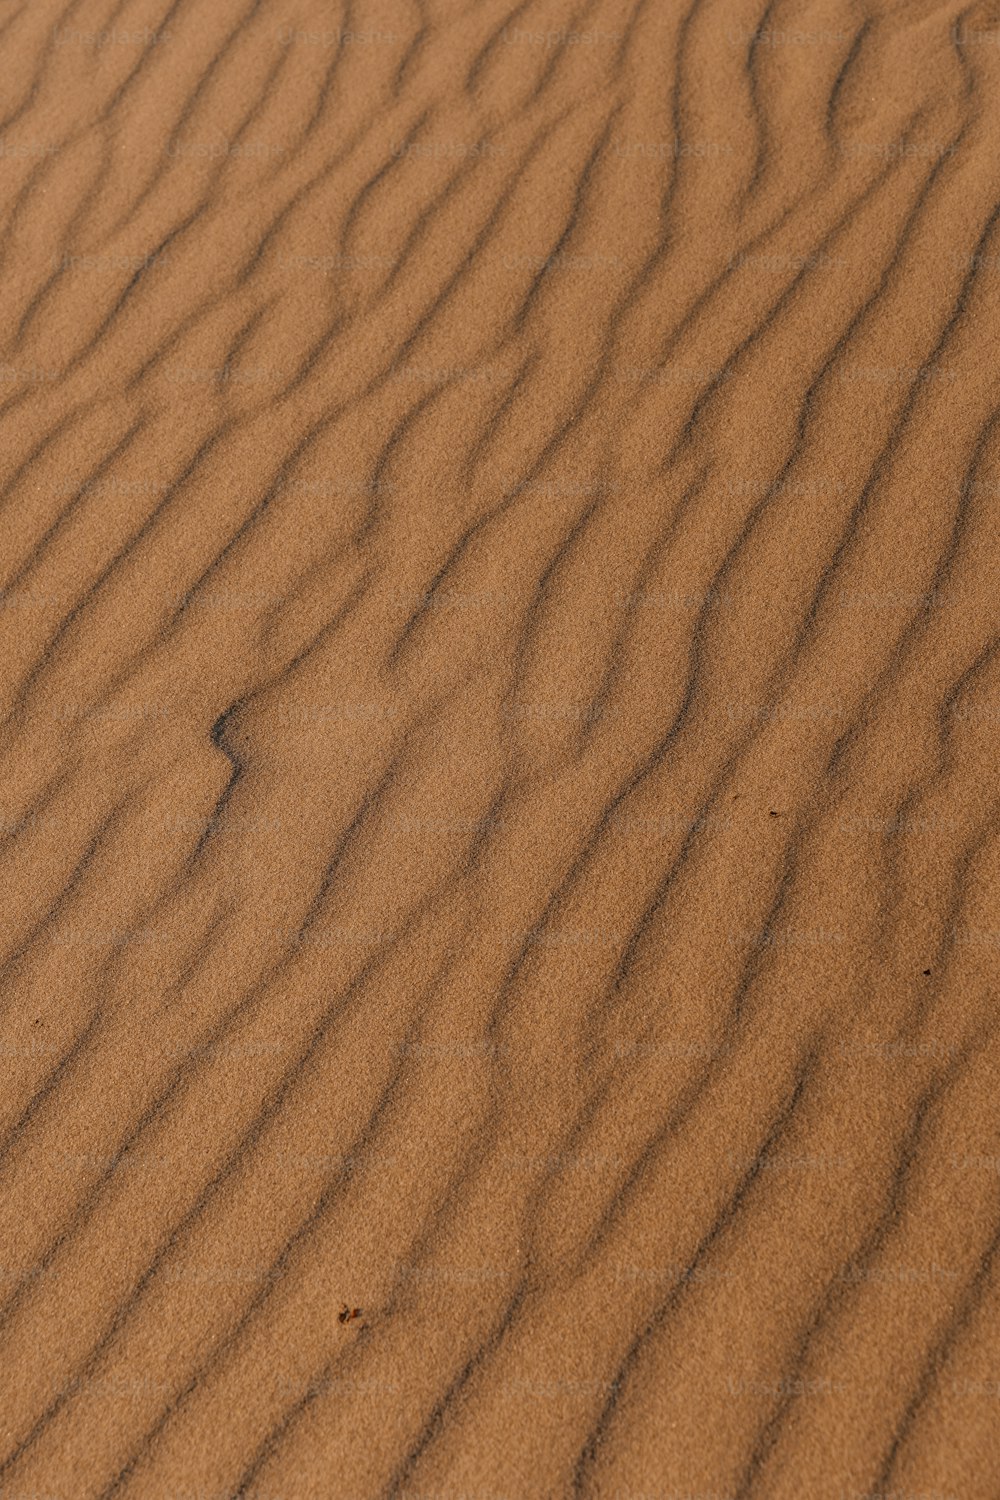 eine Sanddüne, aus der ein kleines Stück Gras wächst